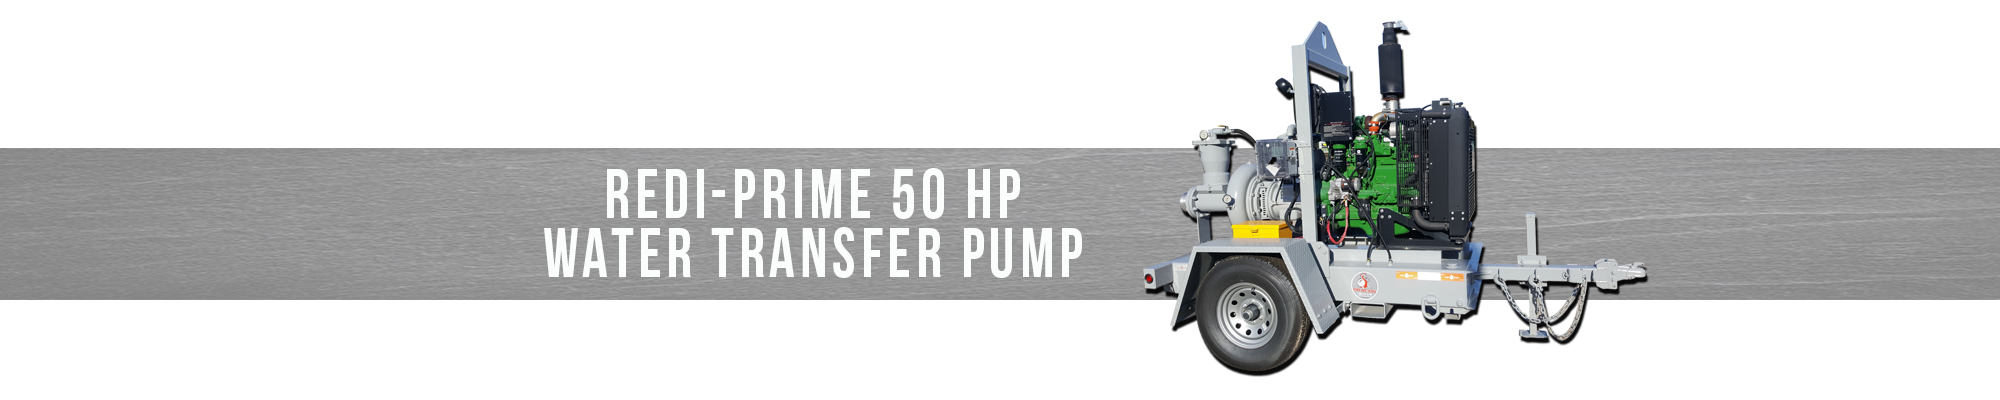 Redi-Prime 50 HP Water transfer pump